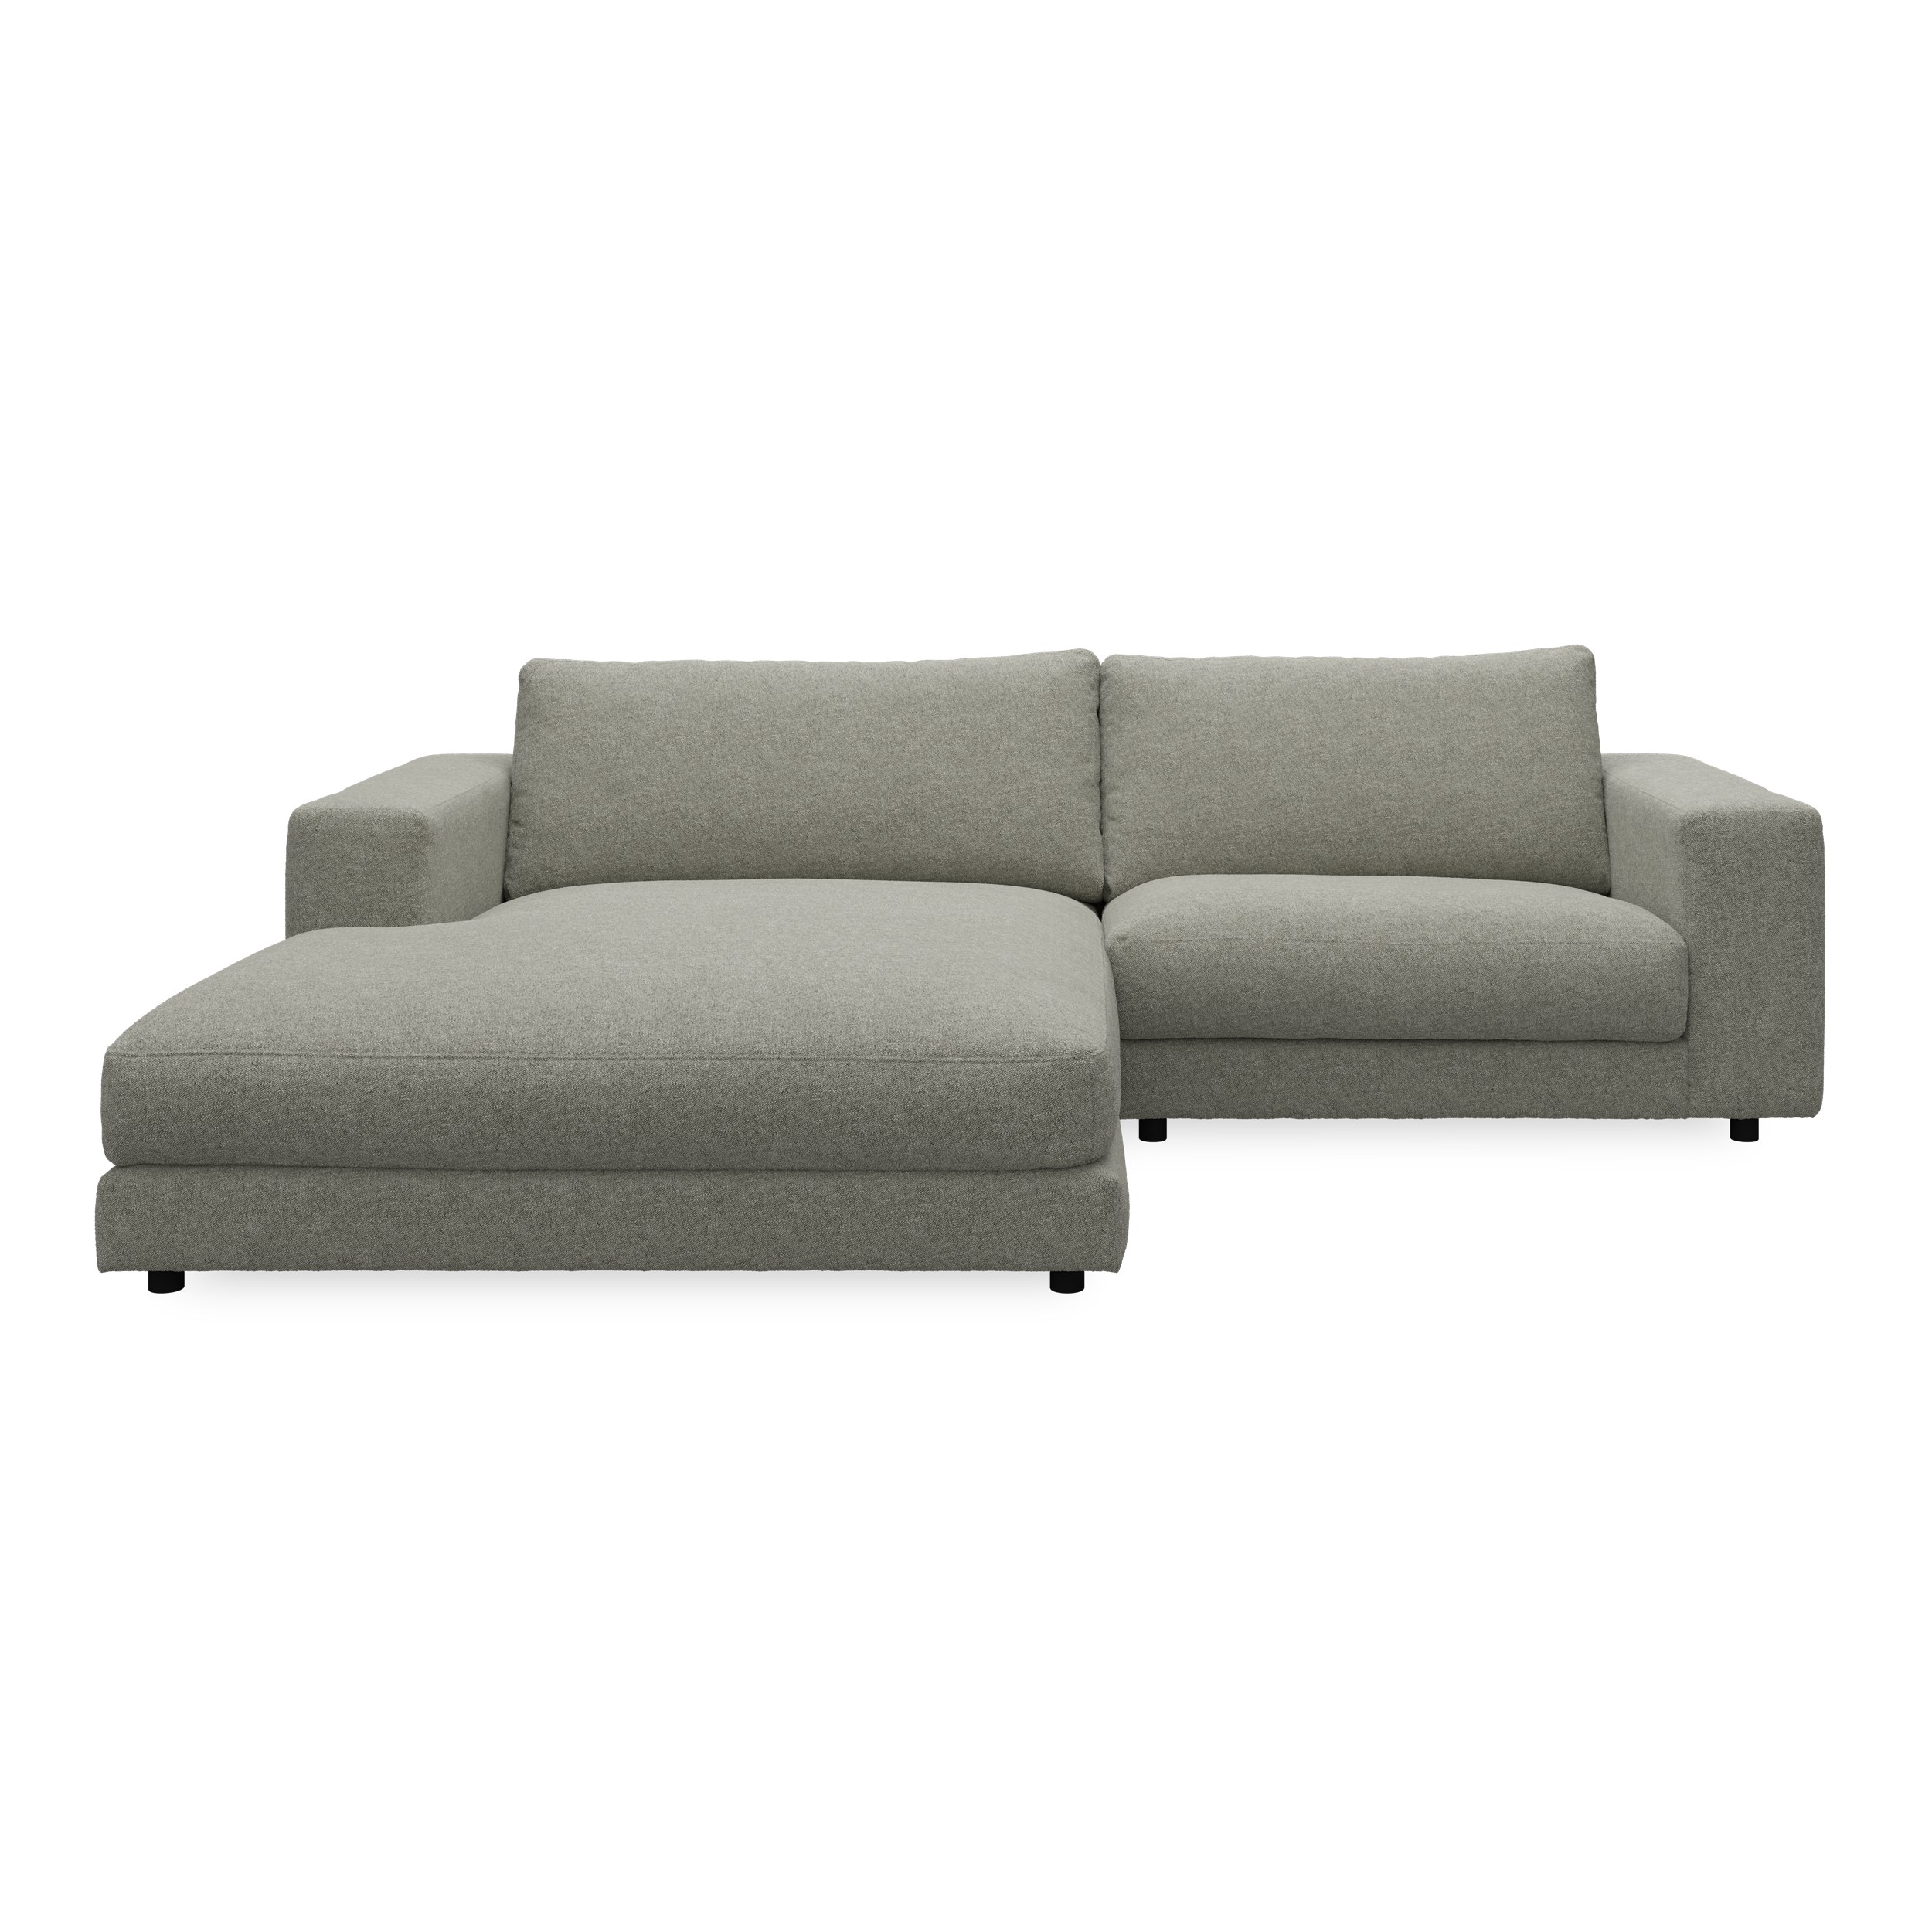 Bennent vänstervänd soffa med schäslong - Yelda Light Grey klädsel, ben i svart plast och S:skum/fib/din/sili R:Dun/skum